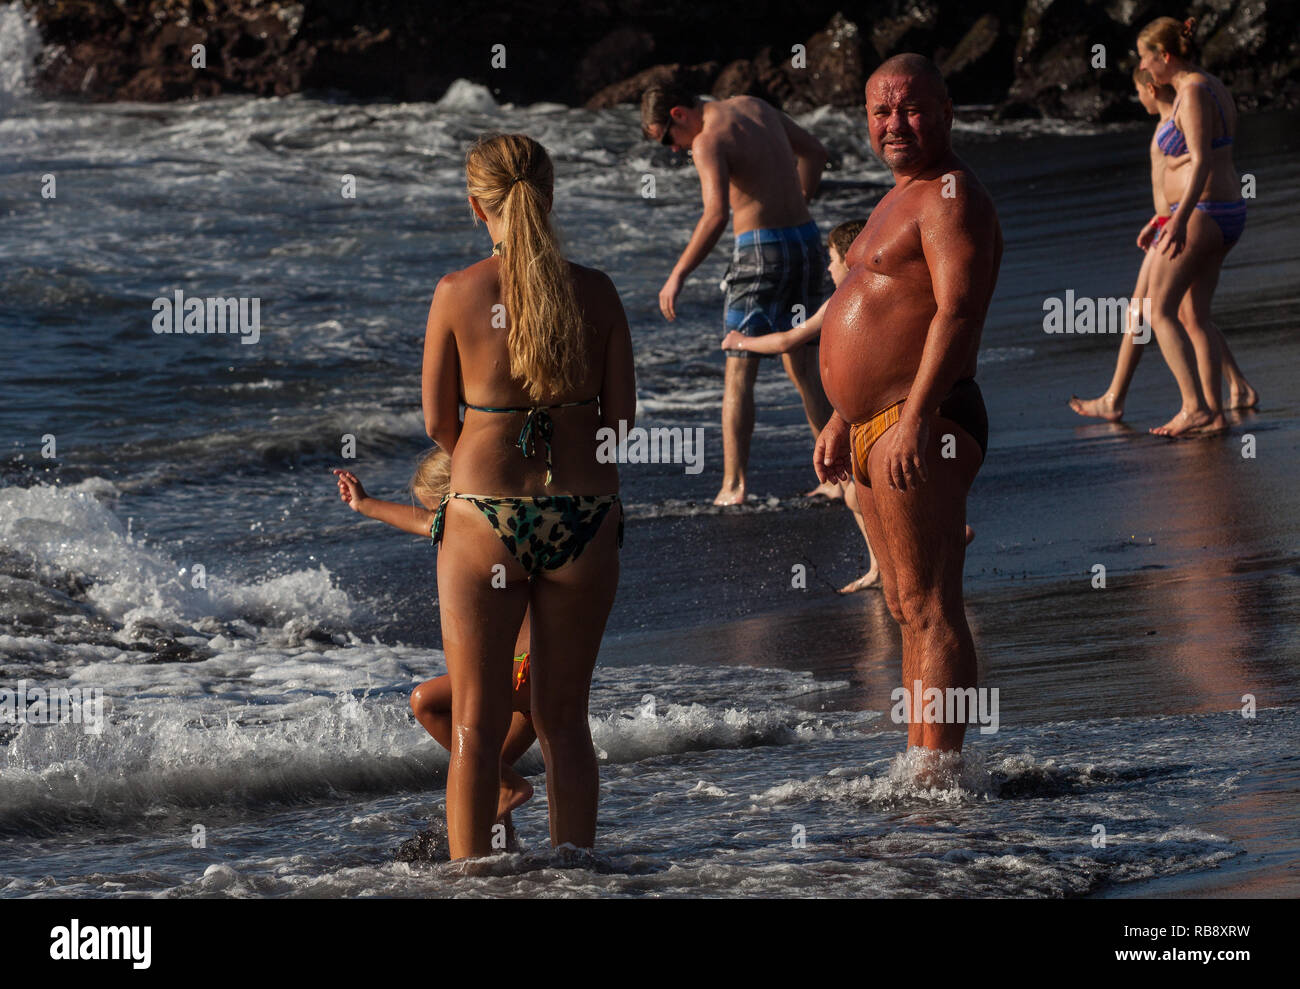 Ein schönes Foto von einem Mann mit einem großen Bauch genießen Sonne am Strand Stockfoto